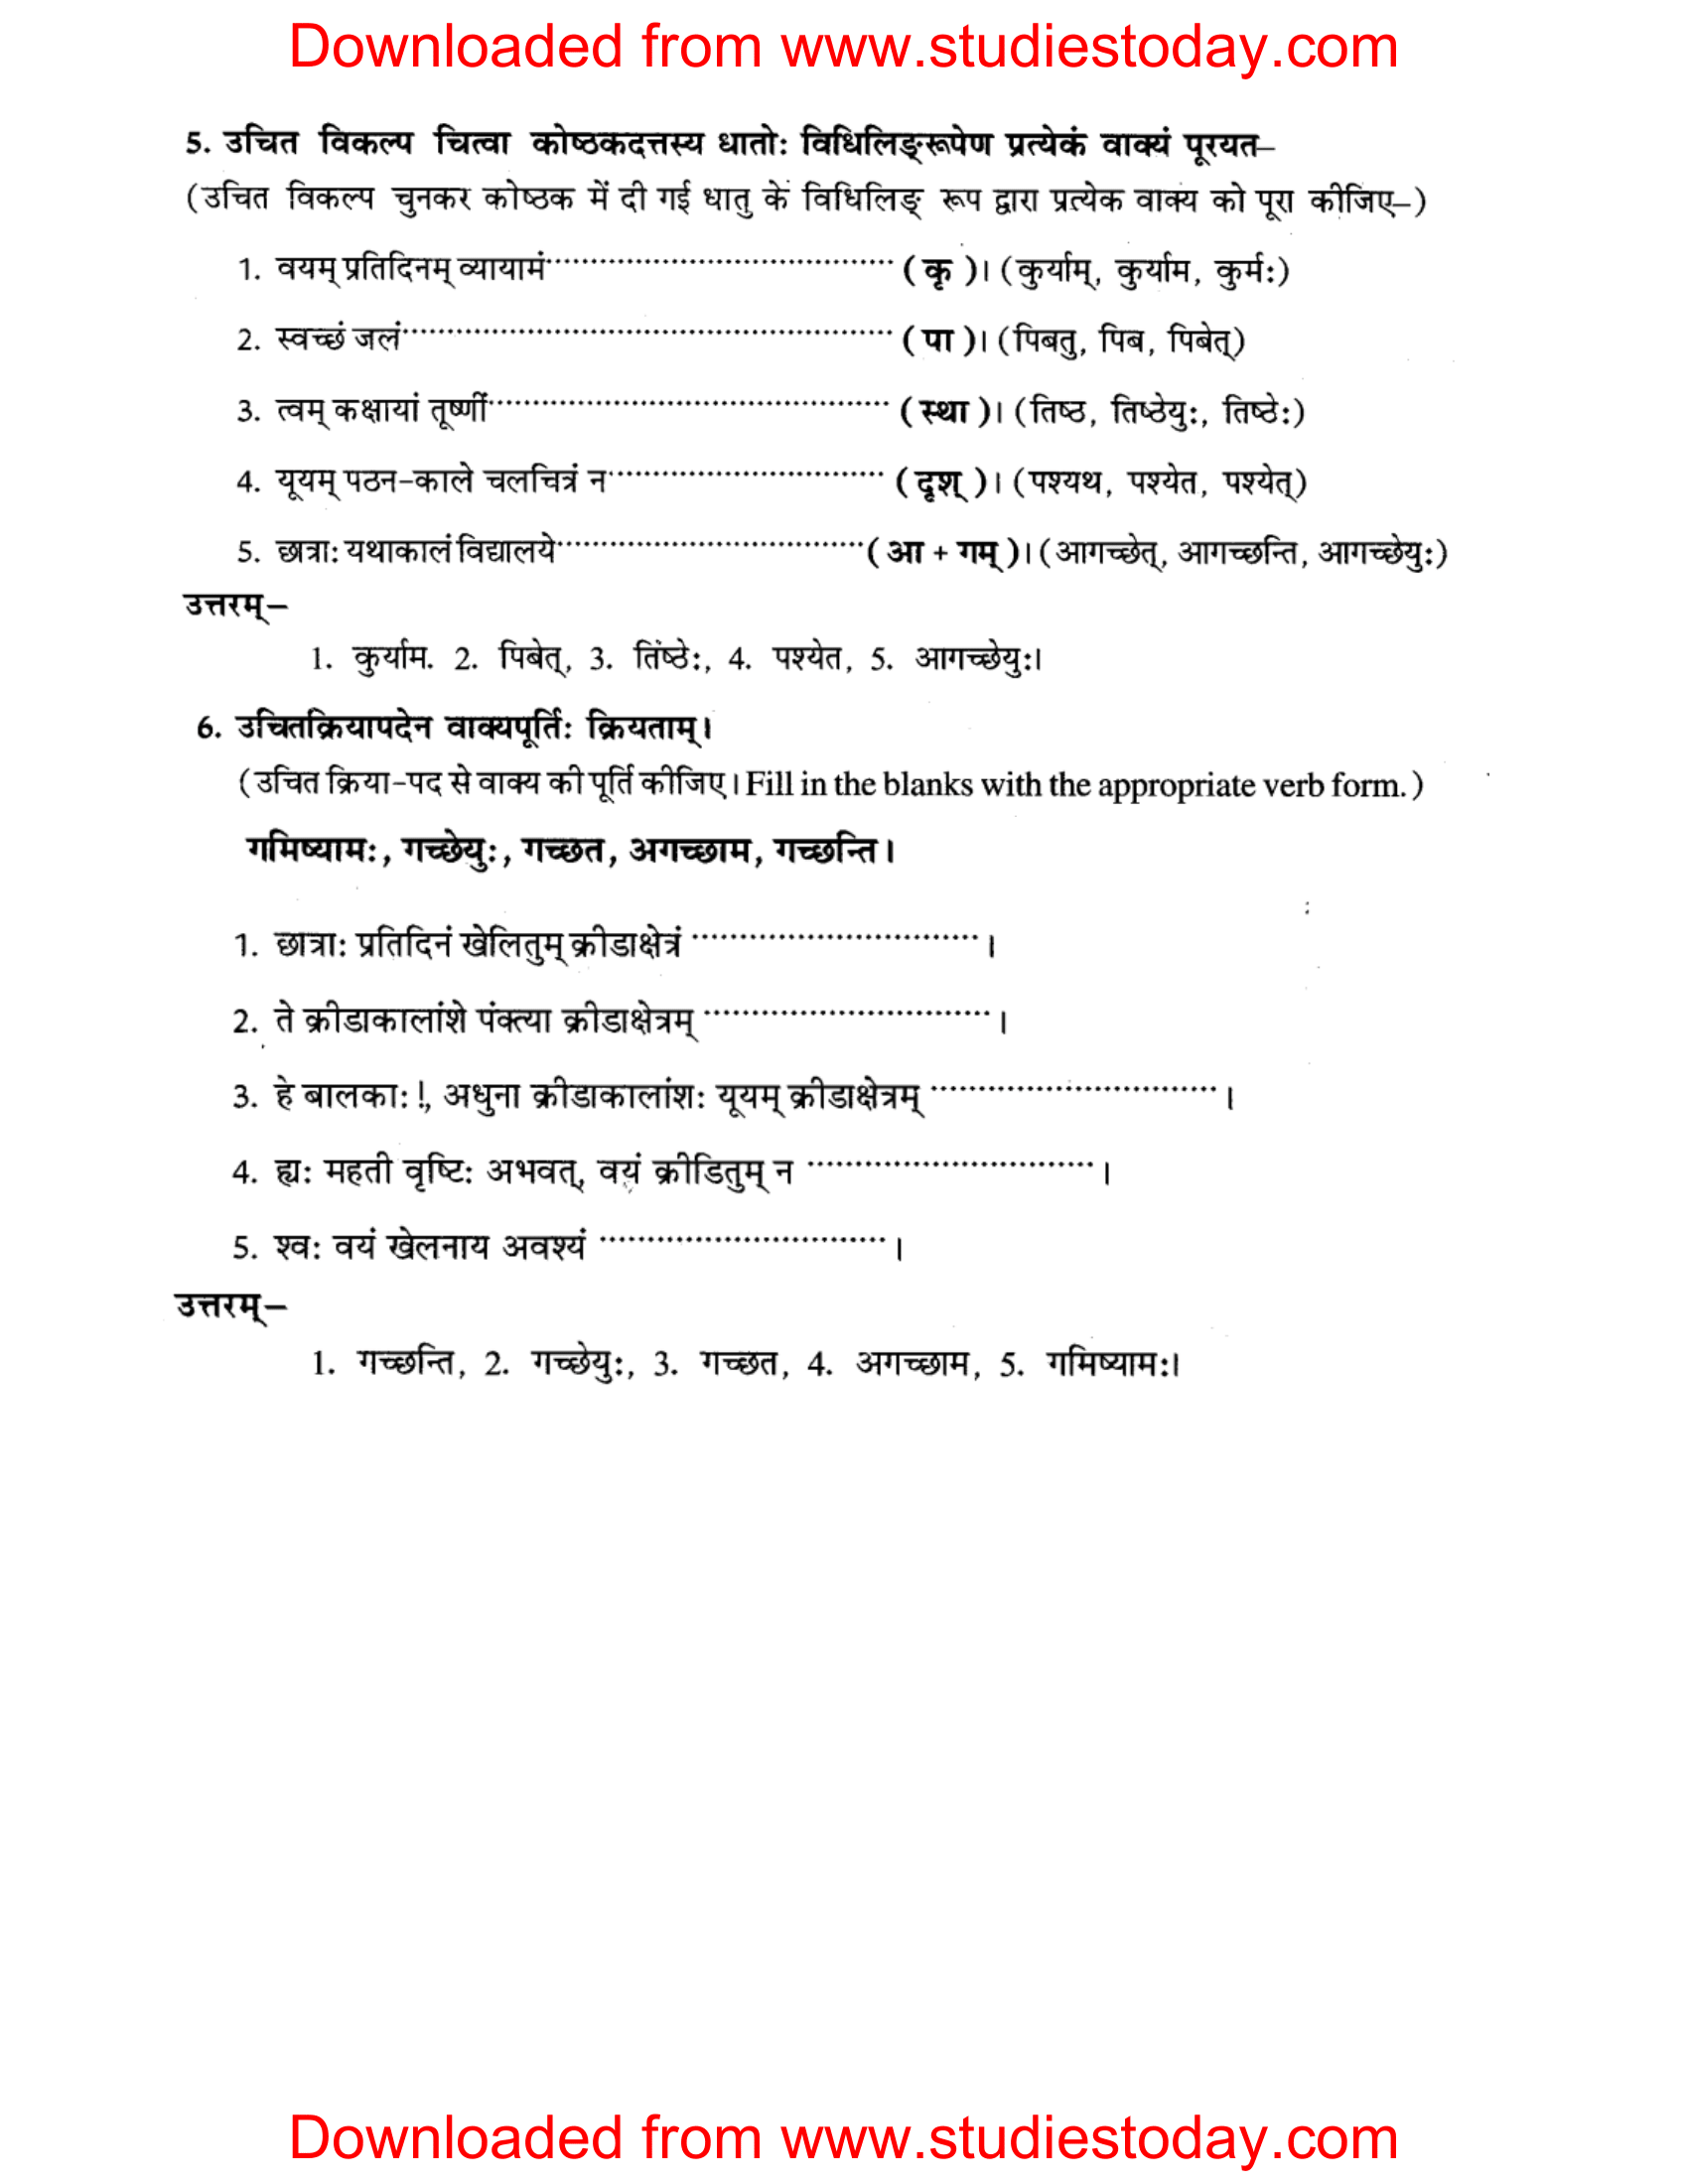 ncert-solutions-class-8-sanskrit-chapter-6-kriyapadani-tatha-dhatrupani-3